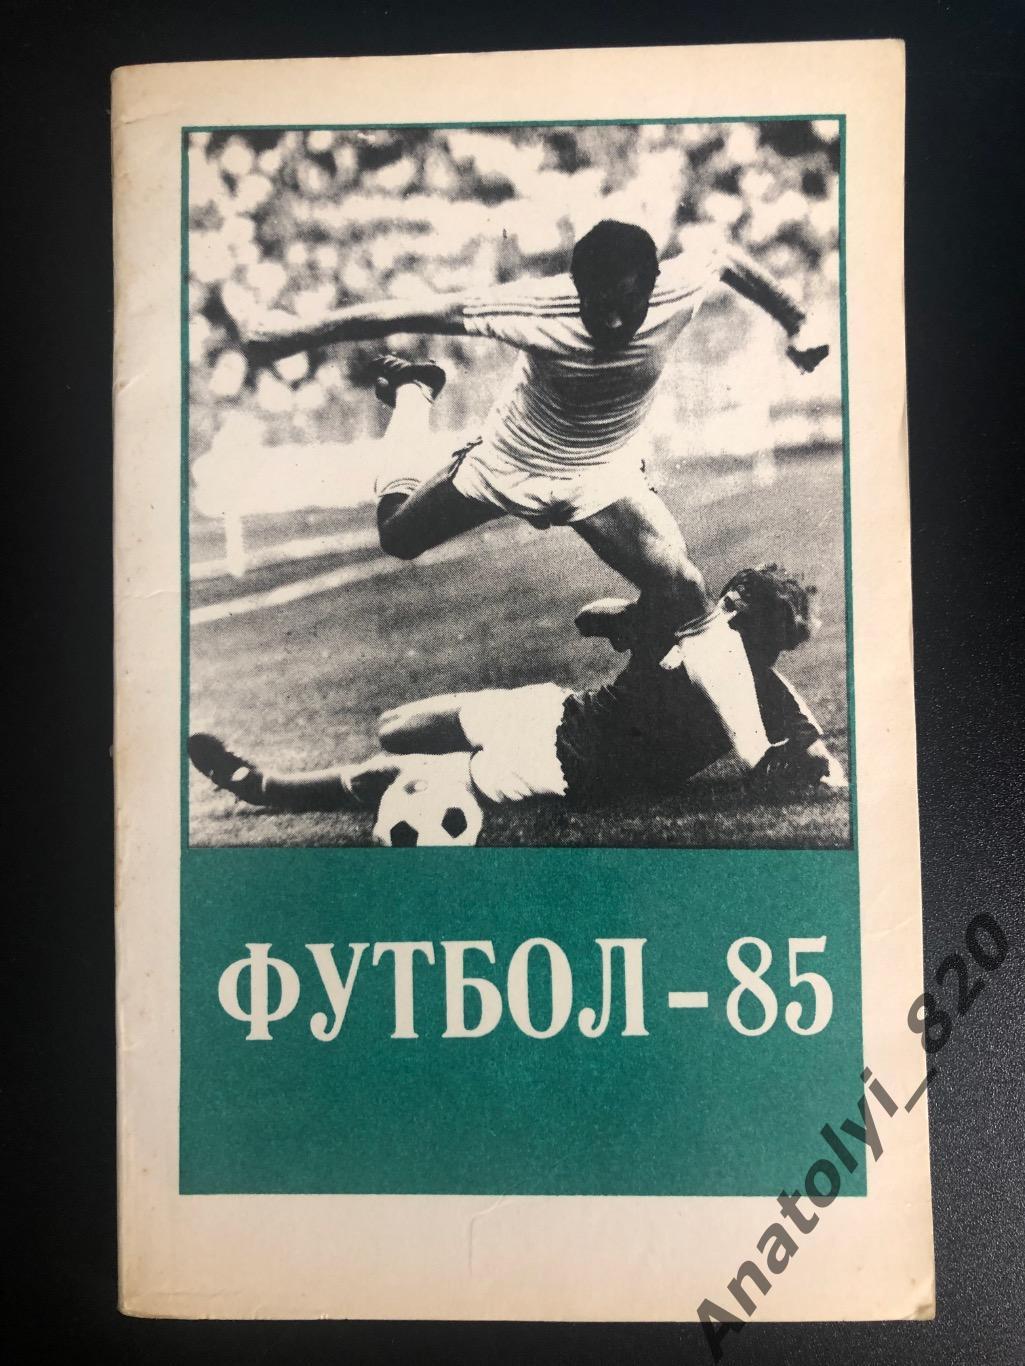 Тбилиси 1985 год календарь - справочник